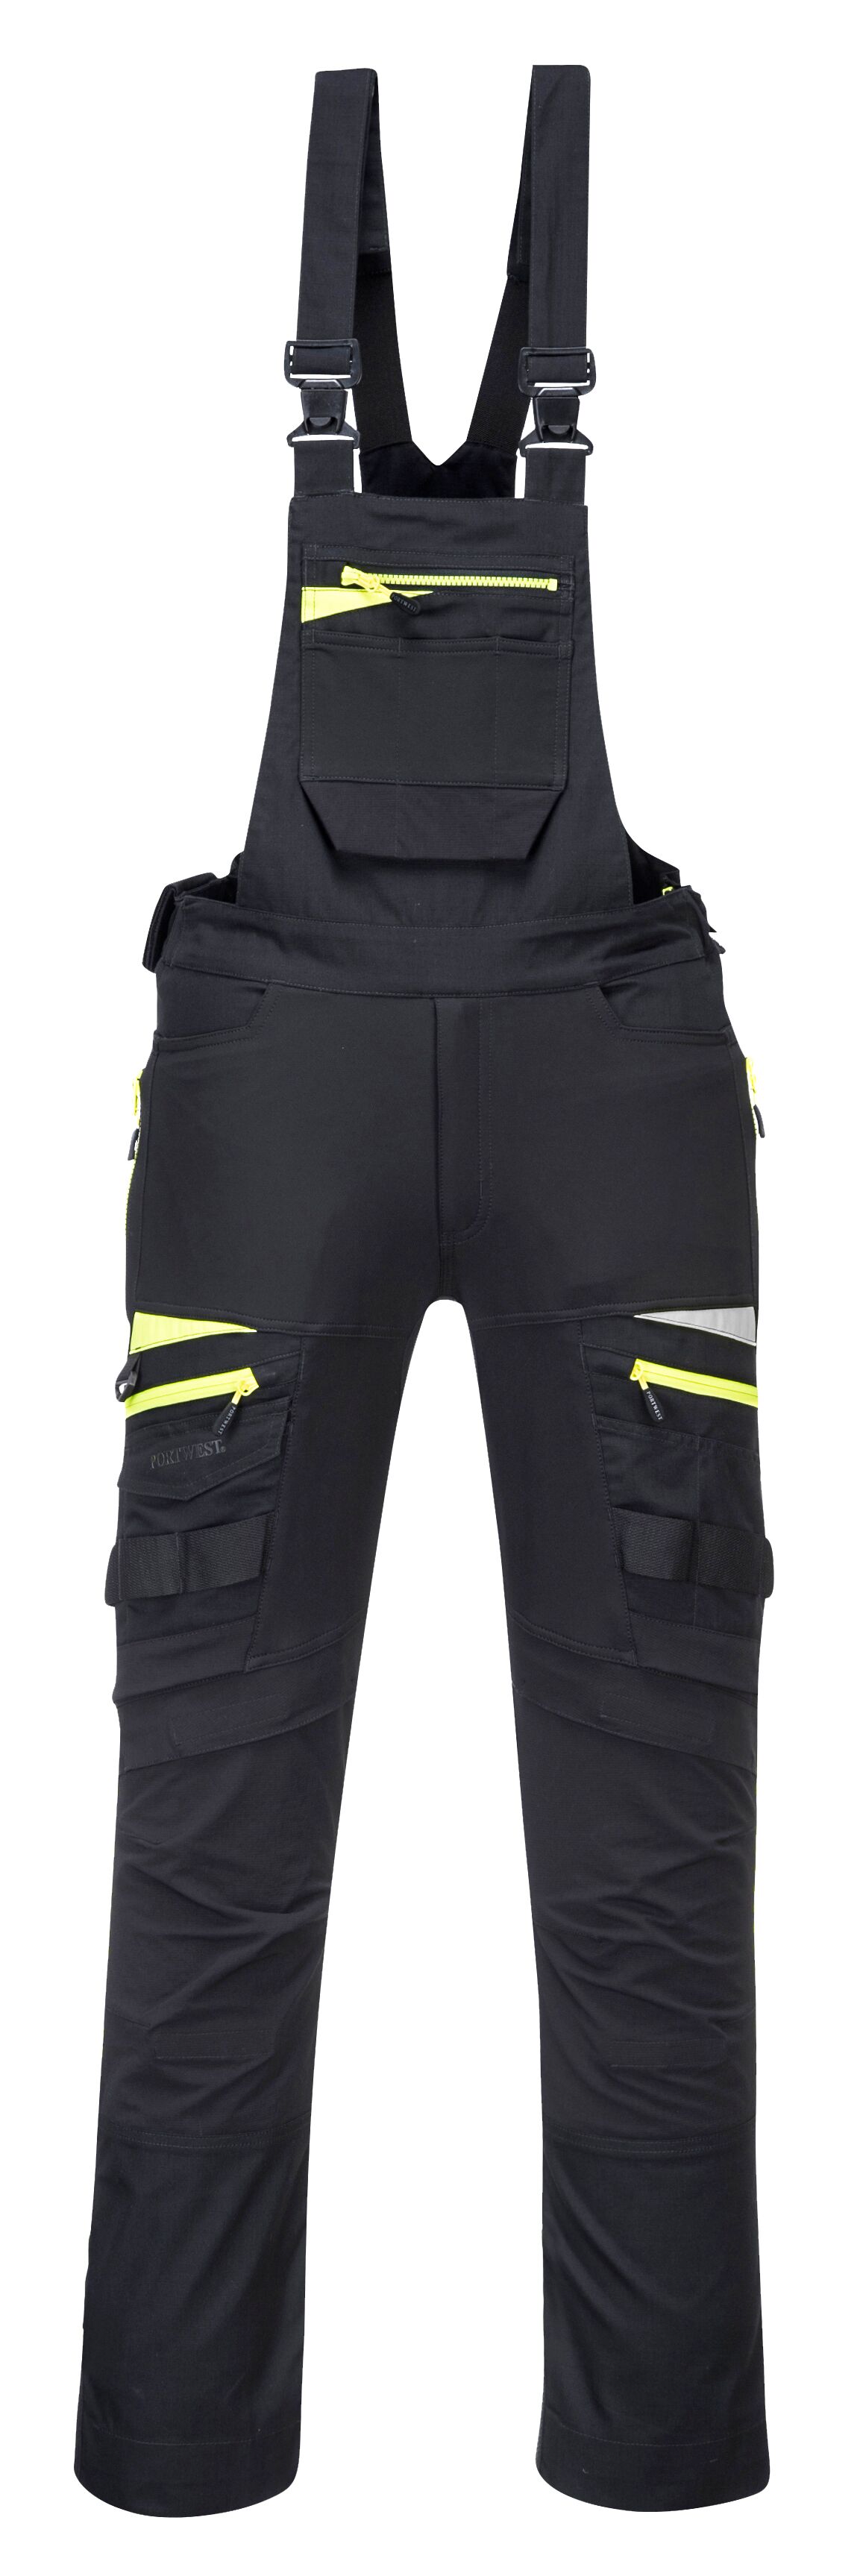 DX4 pracovní laclové kalhoty Barva: černá, Velikost: M